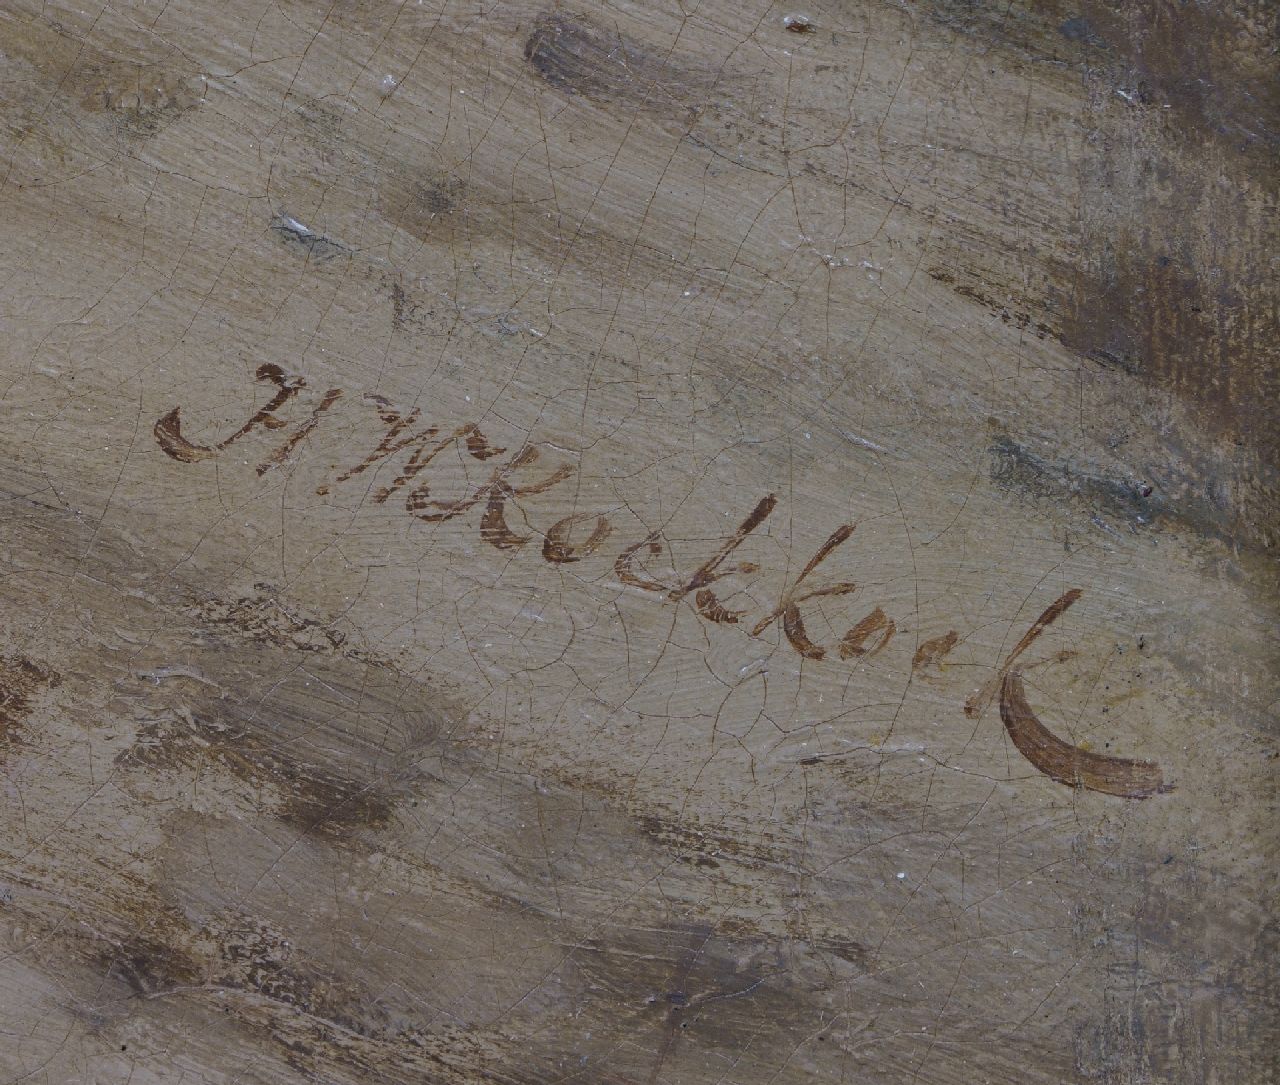 Hermanus Willem Koekkoek Signaturen Berittene Preußische Kavaleristen